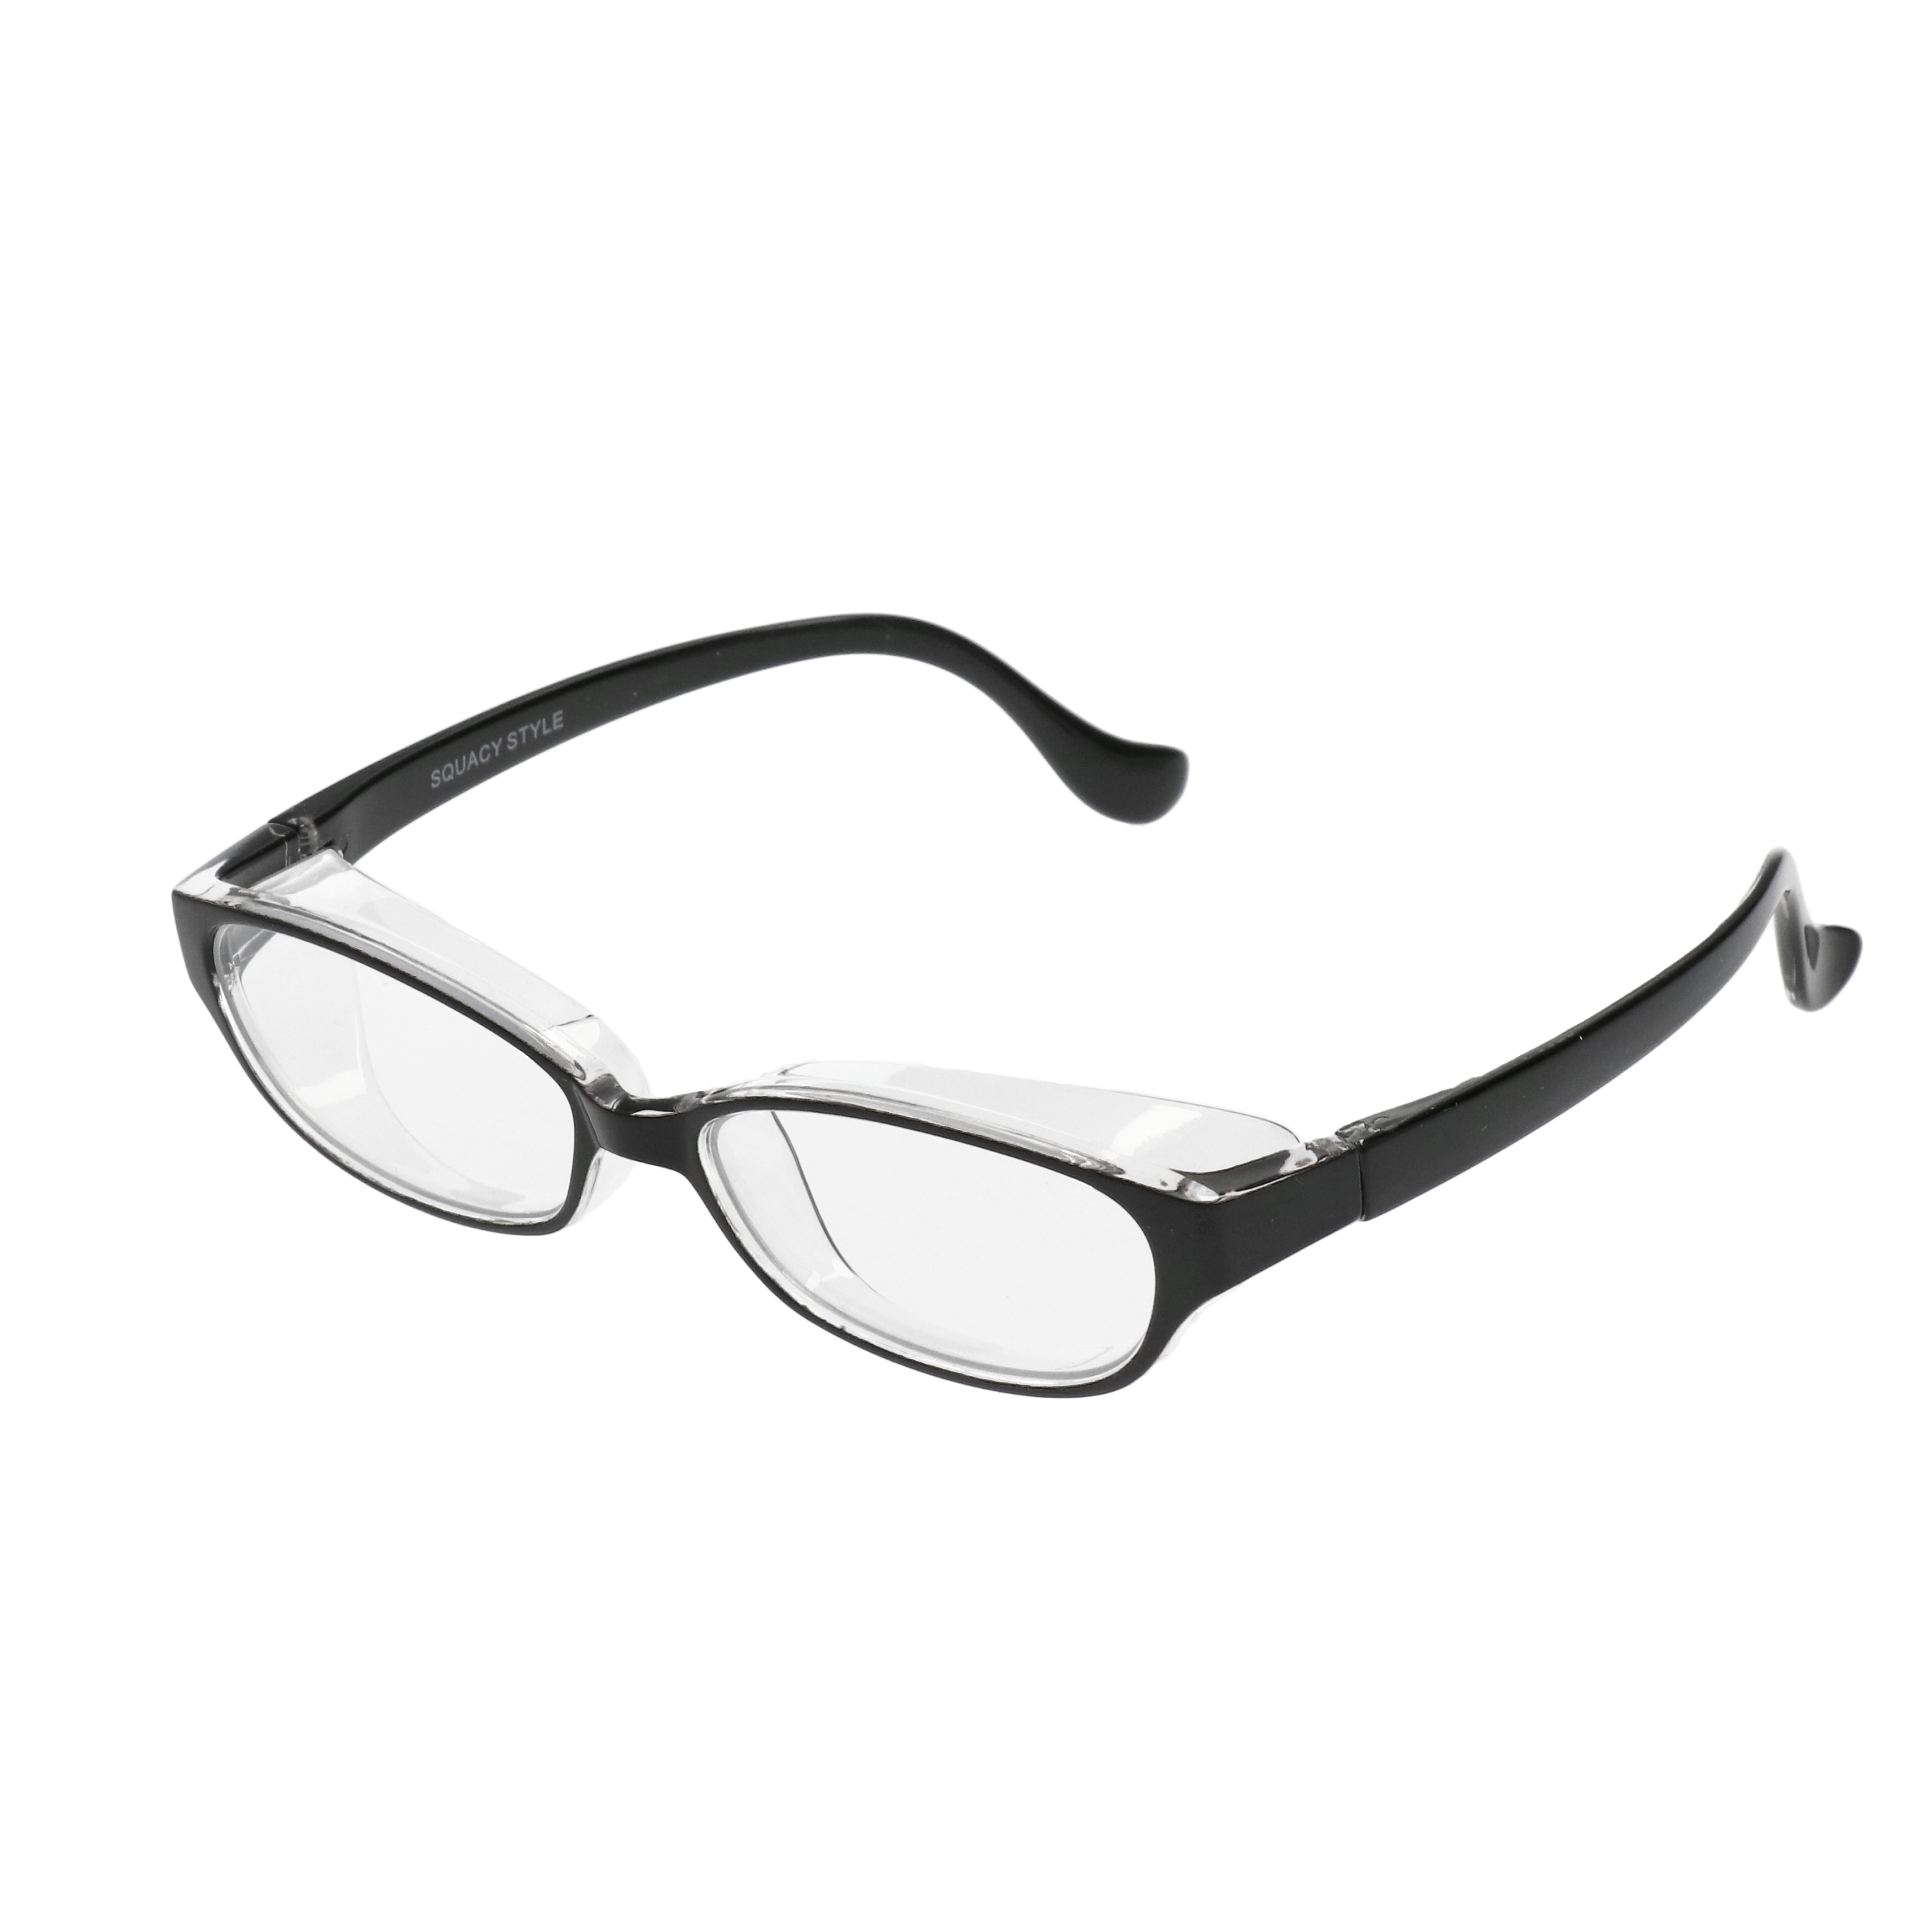 名古屋眼鏡 スカッシースタイル ワイド 1個入 ブラック 5個セット 新品?正規品